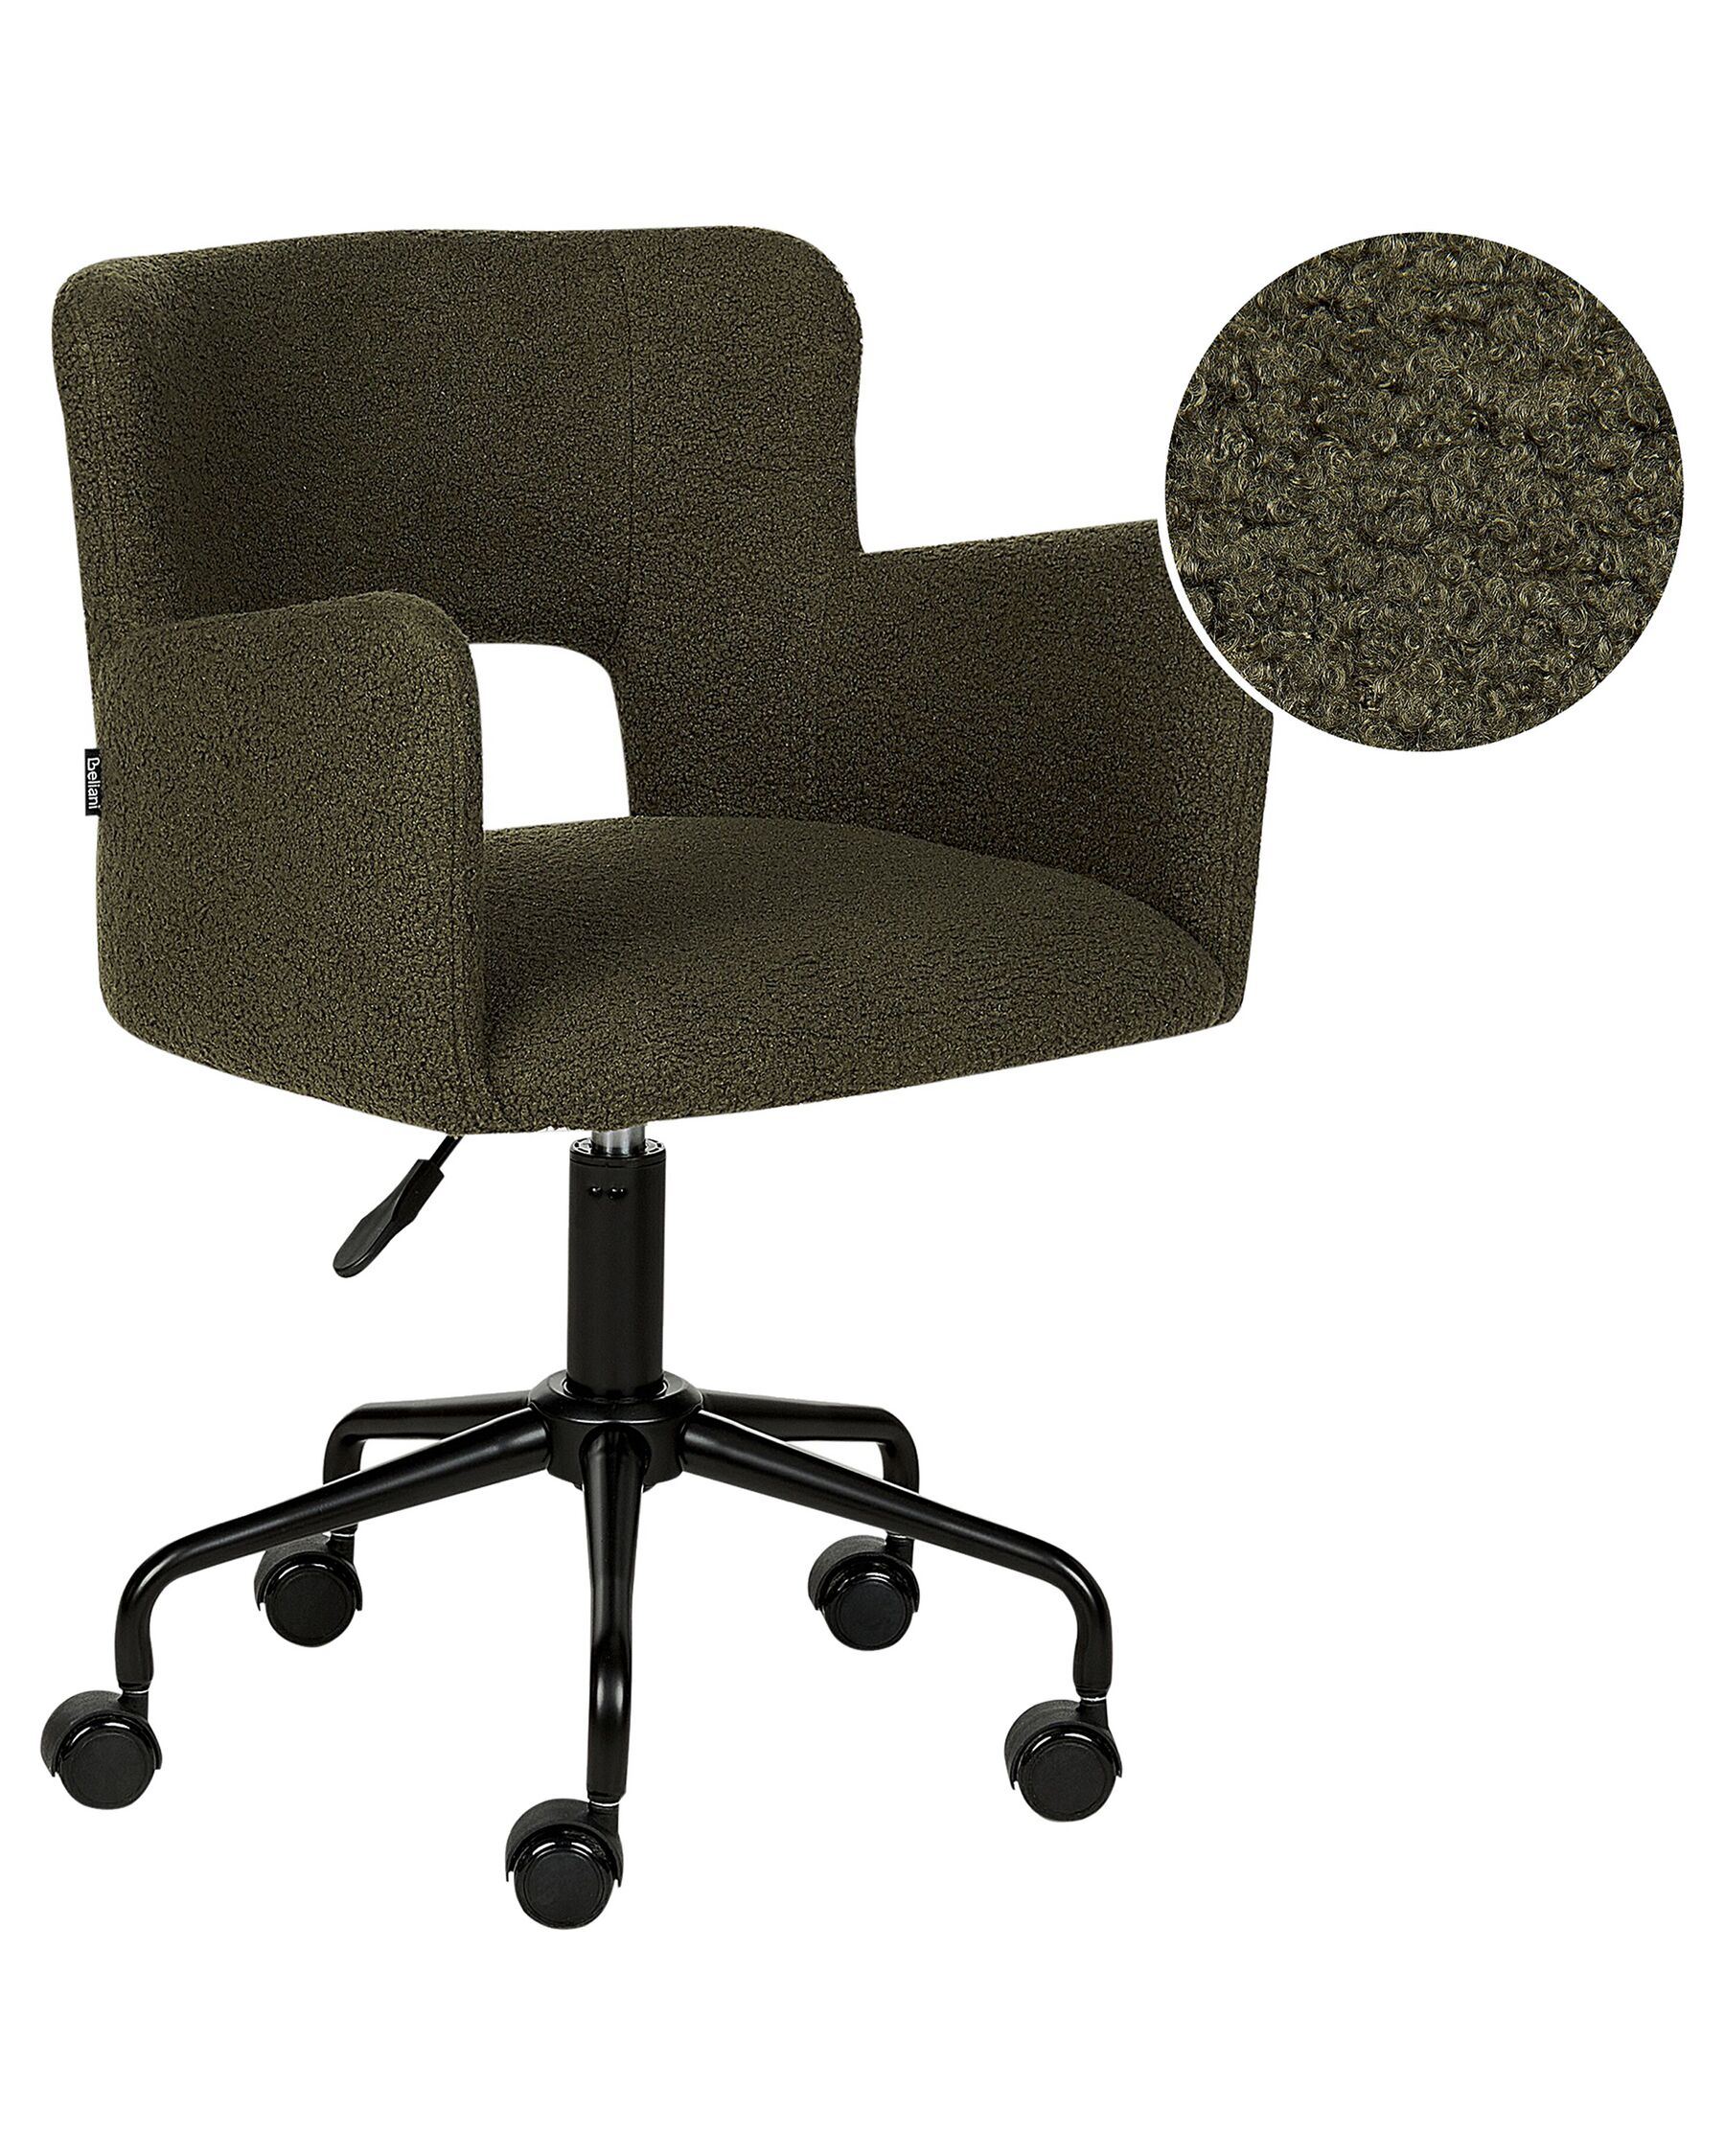 Kancelářská židle s buklé čalouněním zelená SANILAC_896637